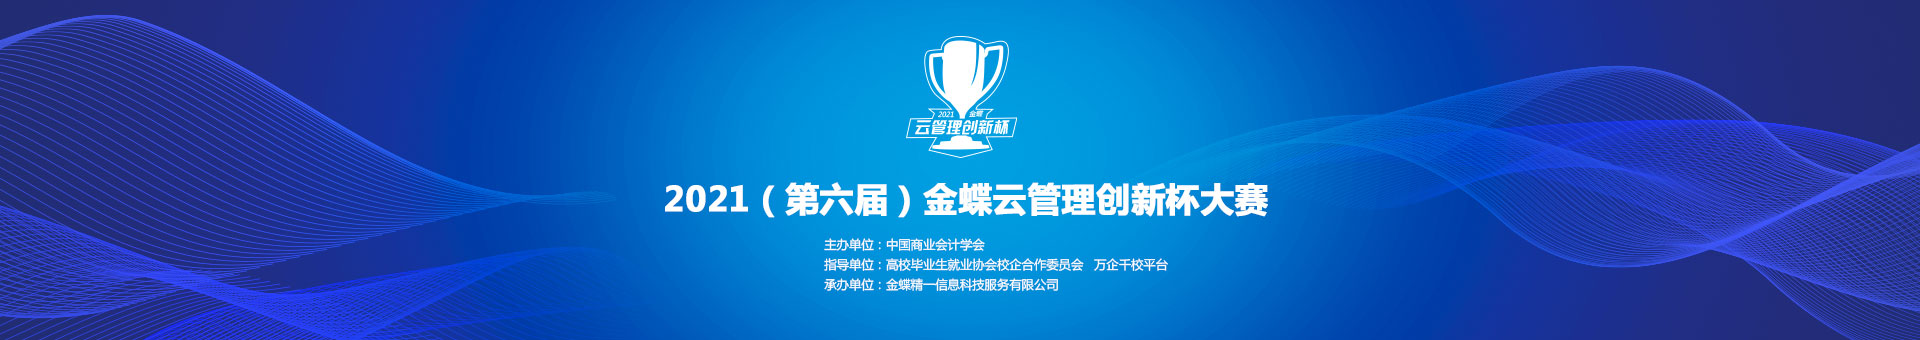 金蝶云社区2021（第六届）金蝶云管理创新杯大赛——比赛说明